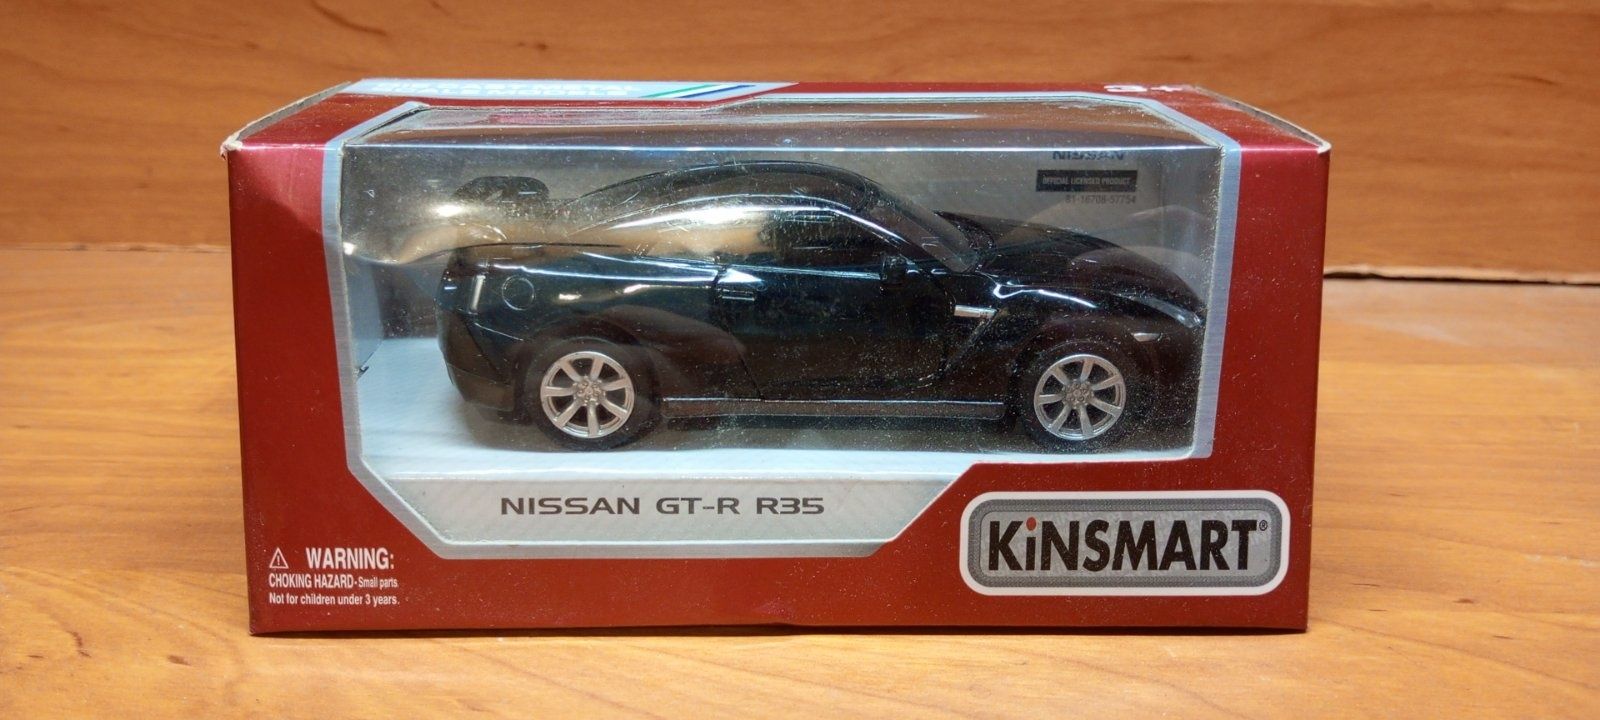 Іграшковий автомобіль Nissan GT-R R35 (Kinsmart)
Іграшка йде разом з к